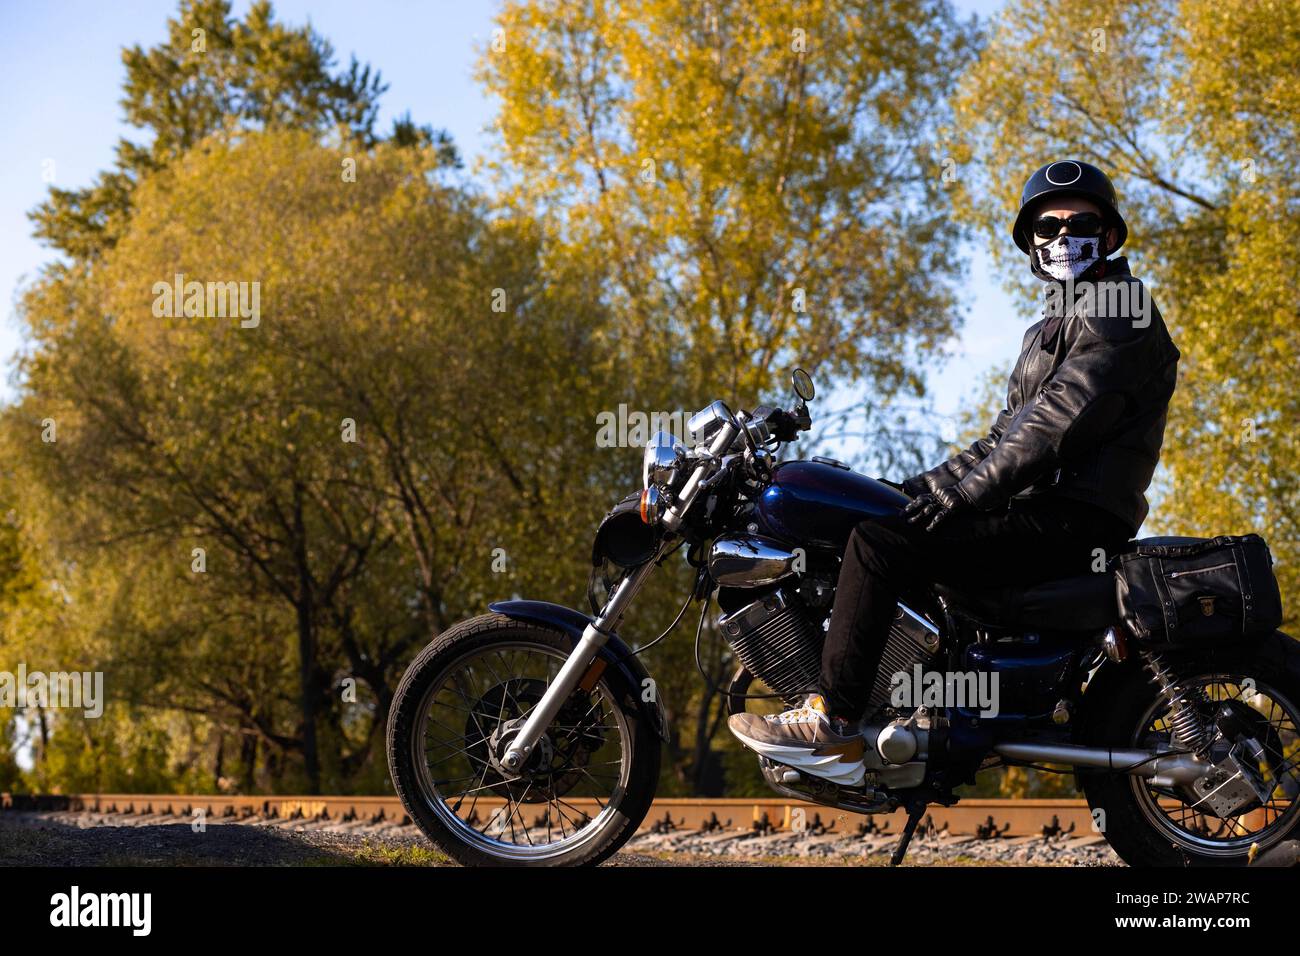 Motorradfahrer in Lederjacke und Helm auf einem Vintage-Motorrad in der Natur. Das Konzept des Motorradlebens und der Saisonbeginn Stockfoto